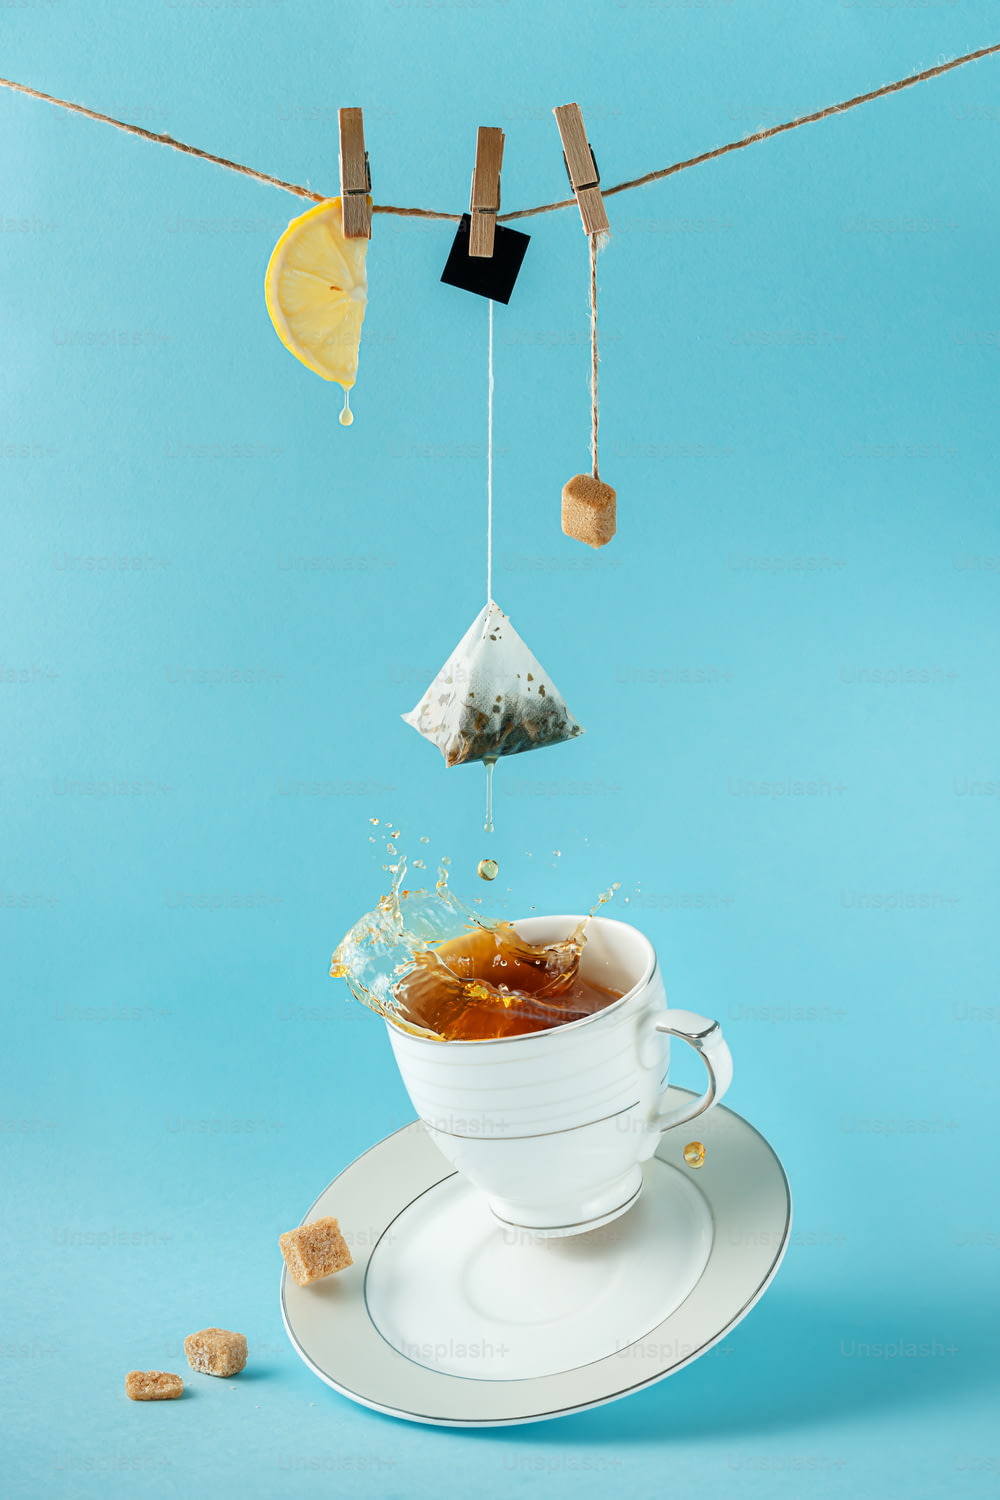 Saquinho de chá, limão e açúcar pendurados na corda sobre o chá espirrando na xícara em fundo azul. Natureza morta criativa